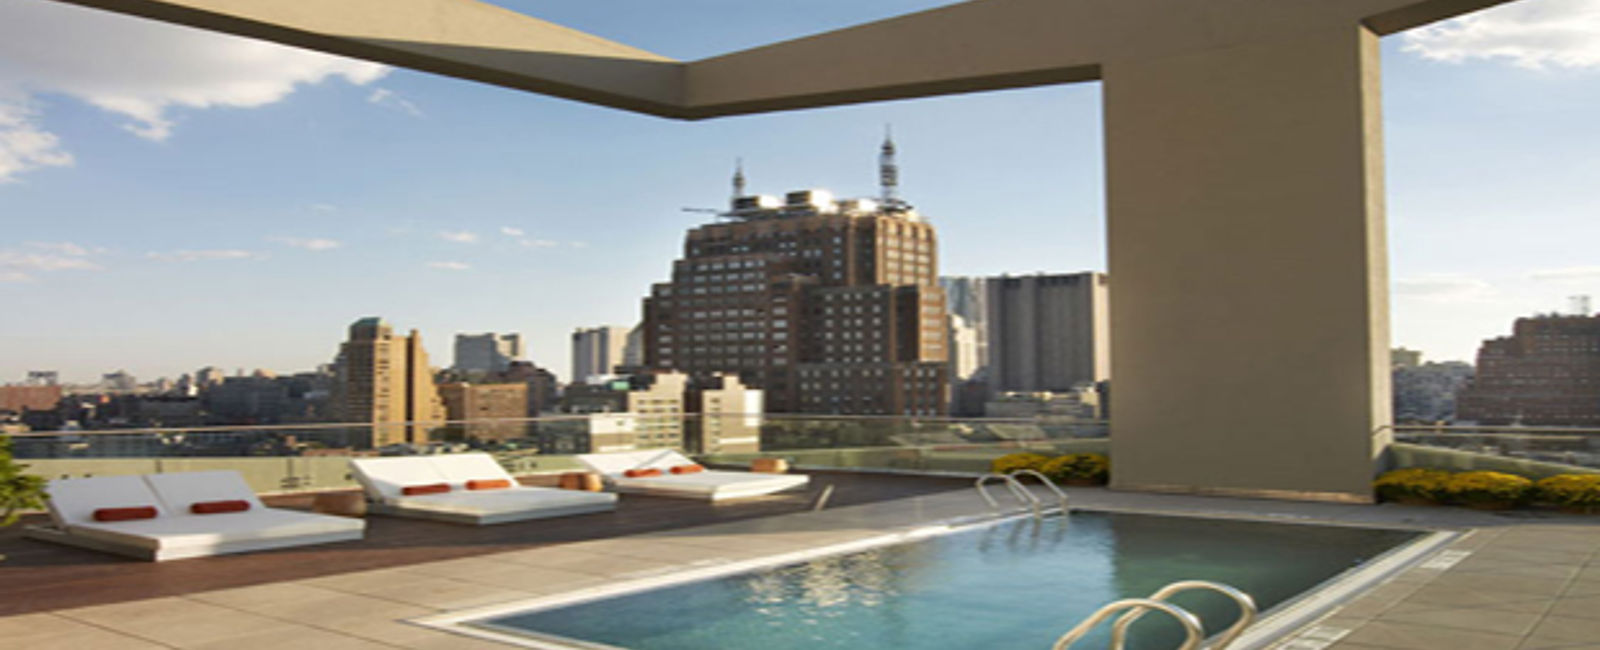 HOTEL TIPPS
 The James 
 Ökologisches Luxus Hotel im Herzen von New York 